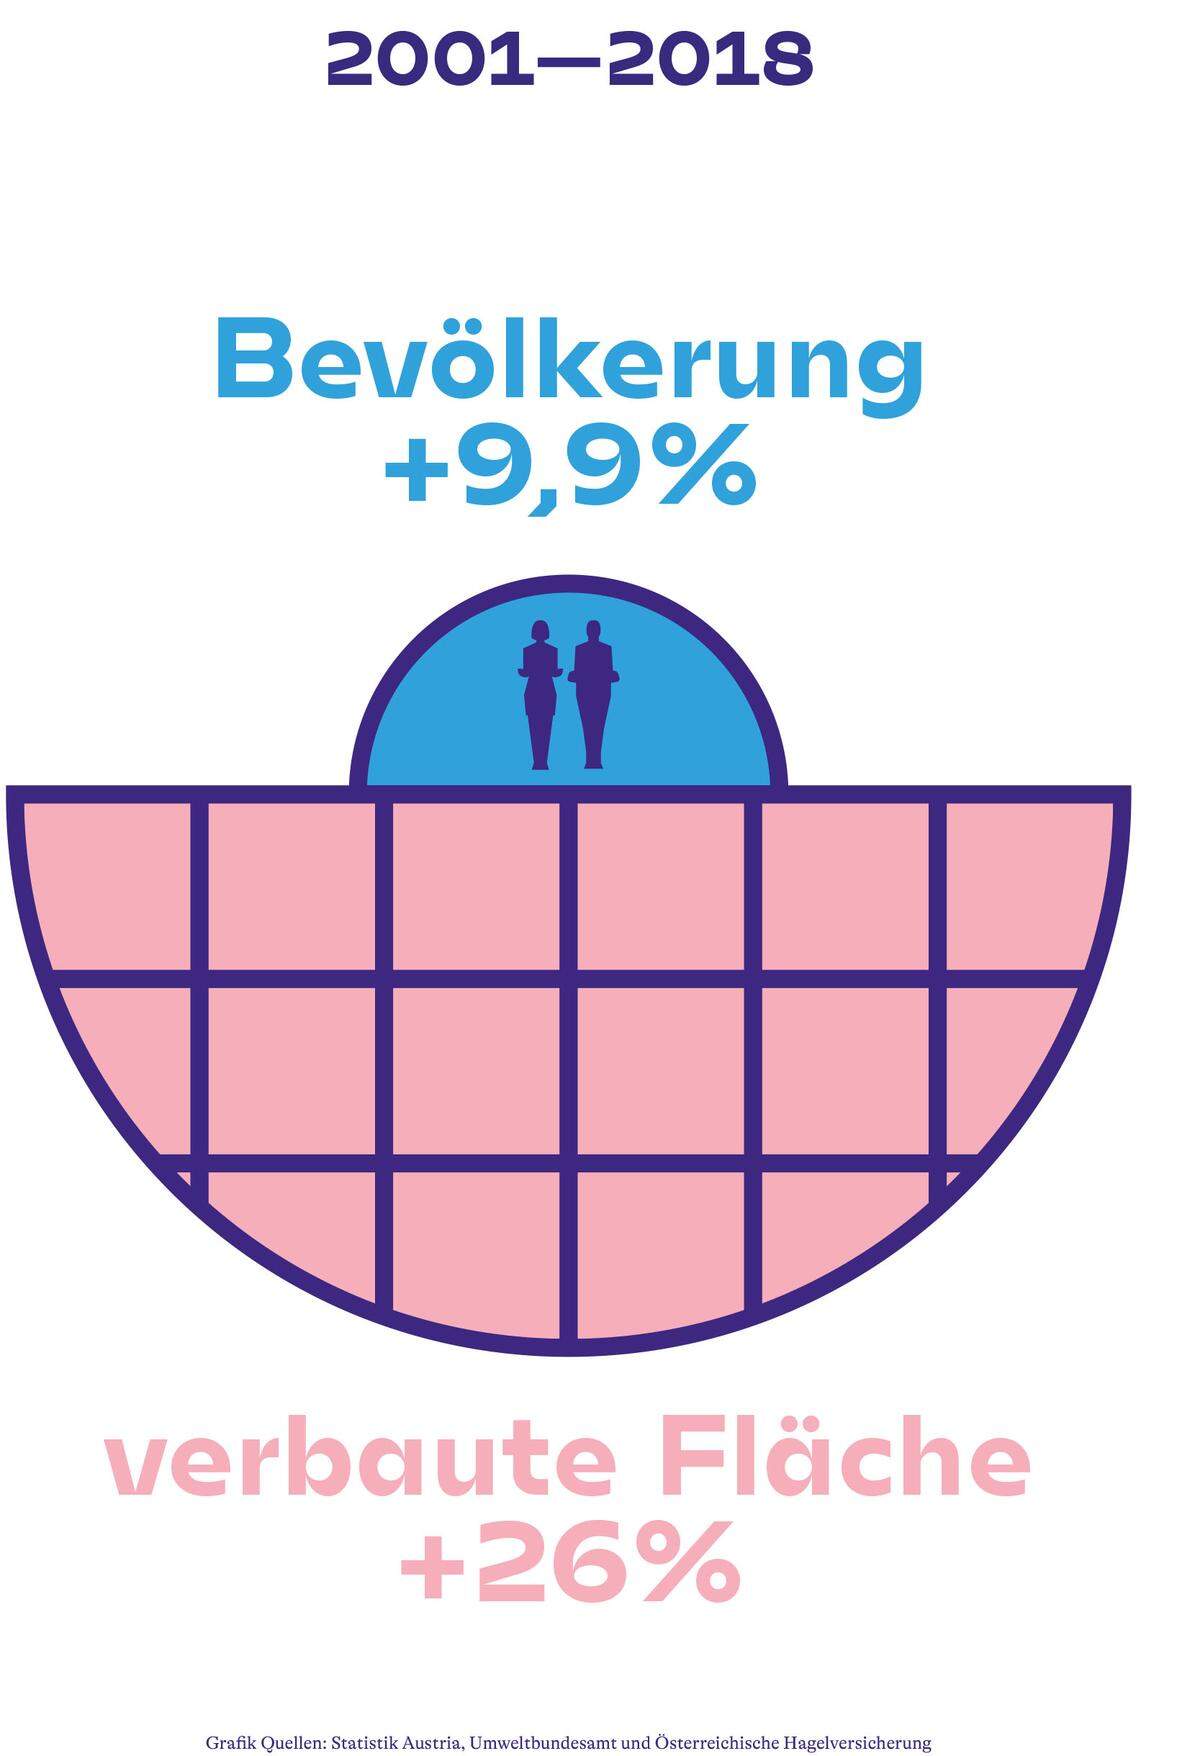 Vergleich des Bevölkerungswachstums und des Bodenverbrauchs in Österreich zwischen 2001 und 2018 (Quelle: Statistik Austria, Umweltbundesamt).